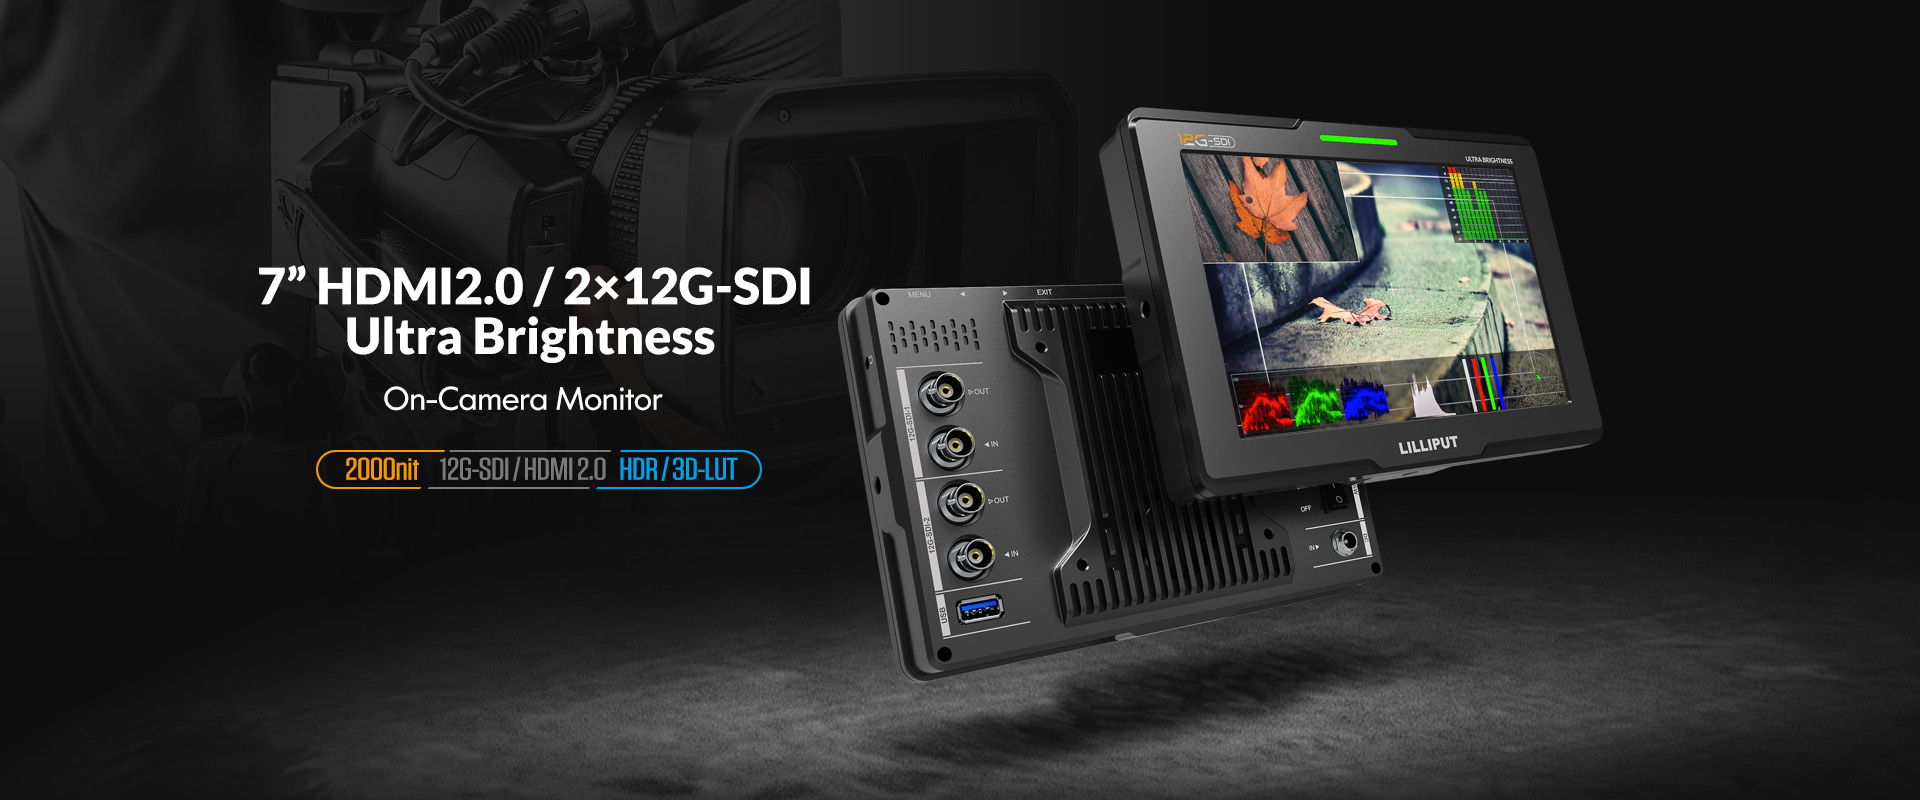 7 inčni 12G-SDI monitor s gornjom kamerom